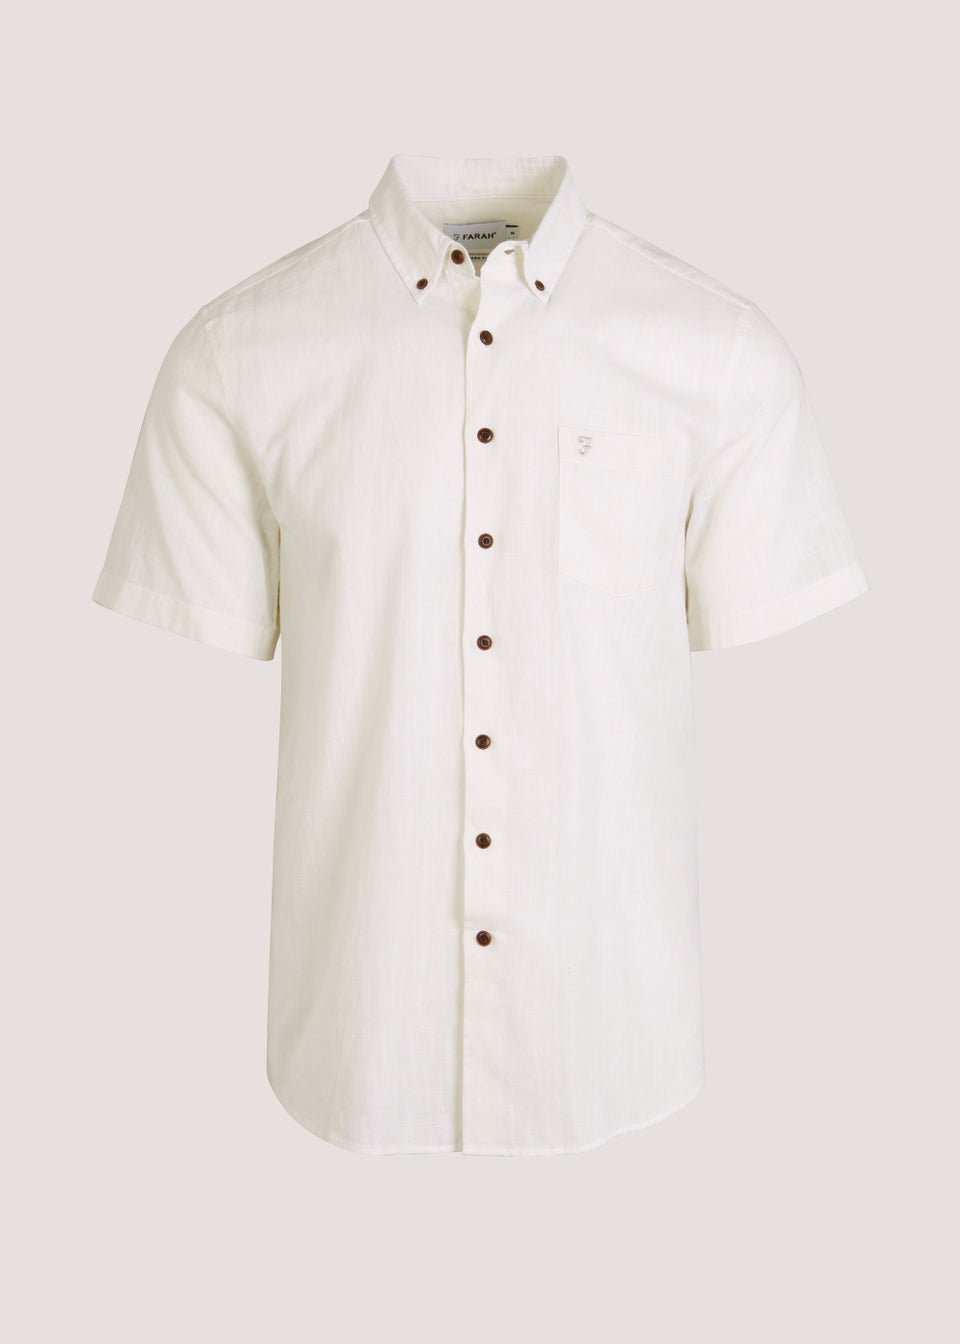 Farah Densmore White Short Sleeve Shirt